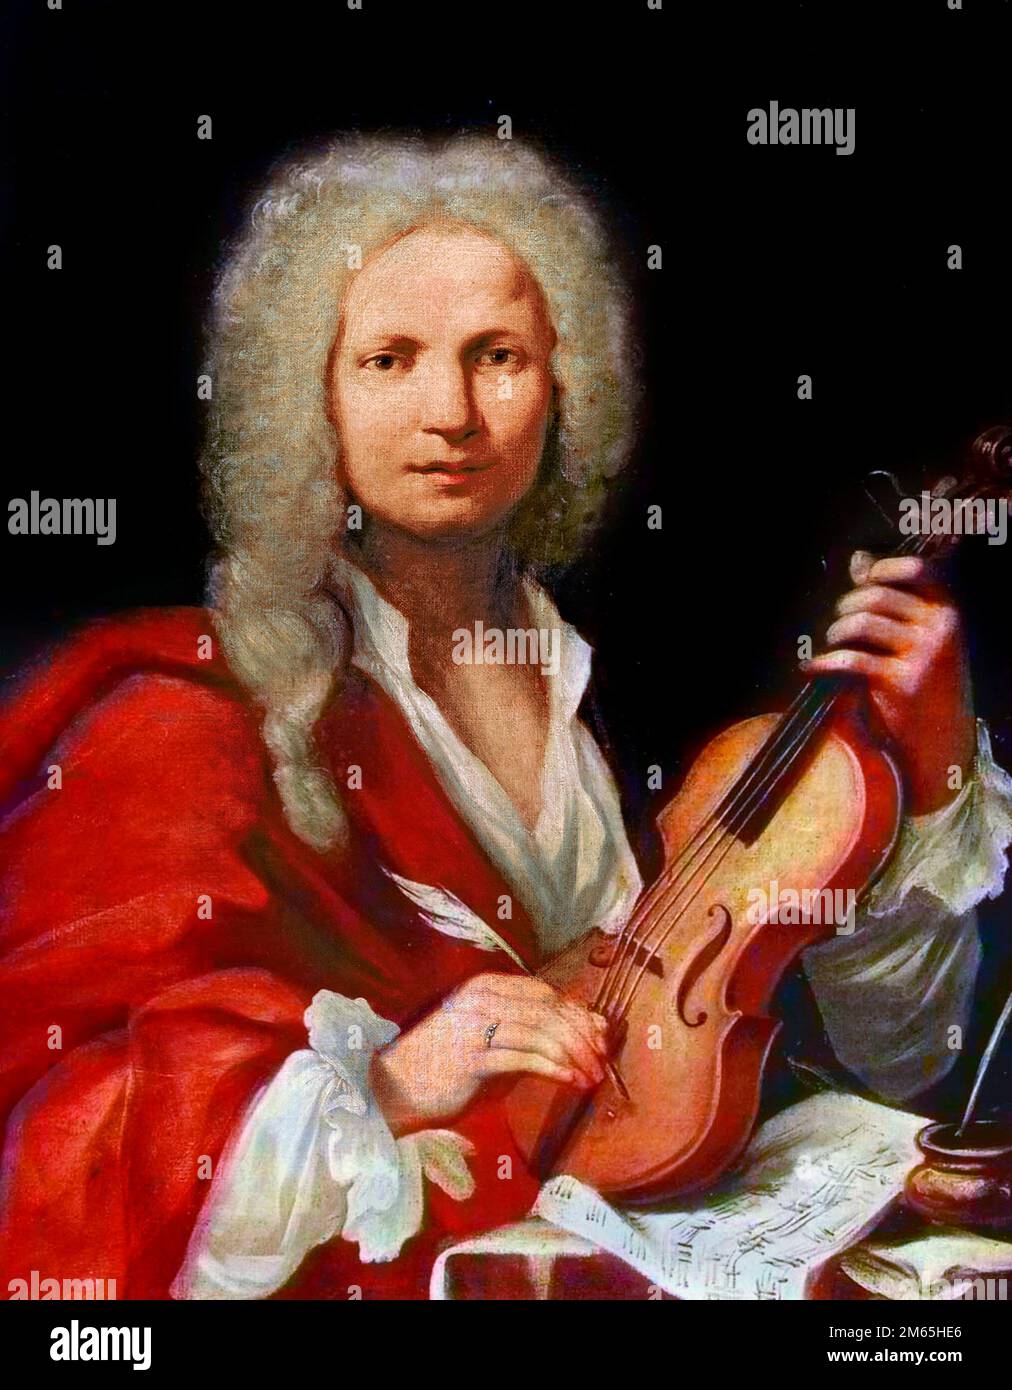 A cargo de Antonio Vivaldi. Retrato del compositor y violinista italiano Antonio Lucio Vivaldi (1678-1741), pintura anónima, óleo sobre lienzo, 1723 Foto de stock